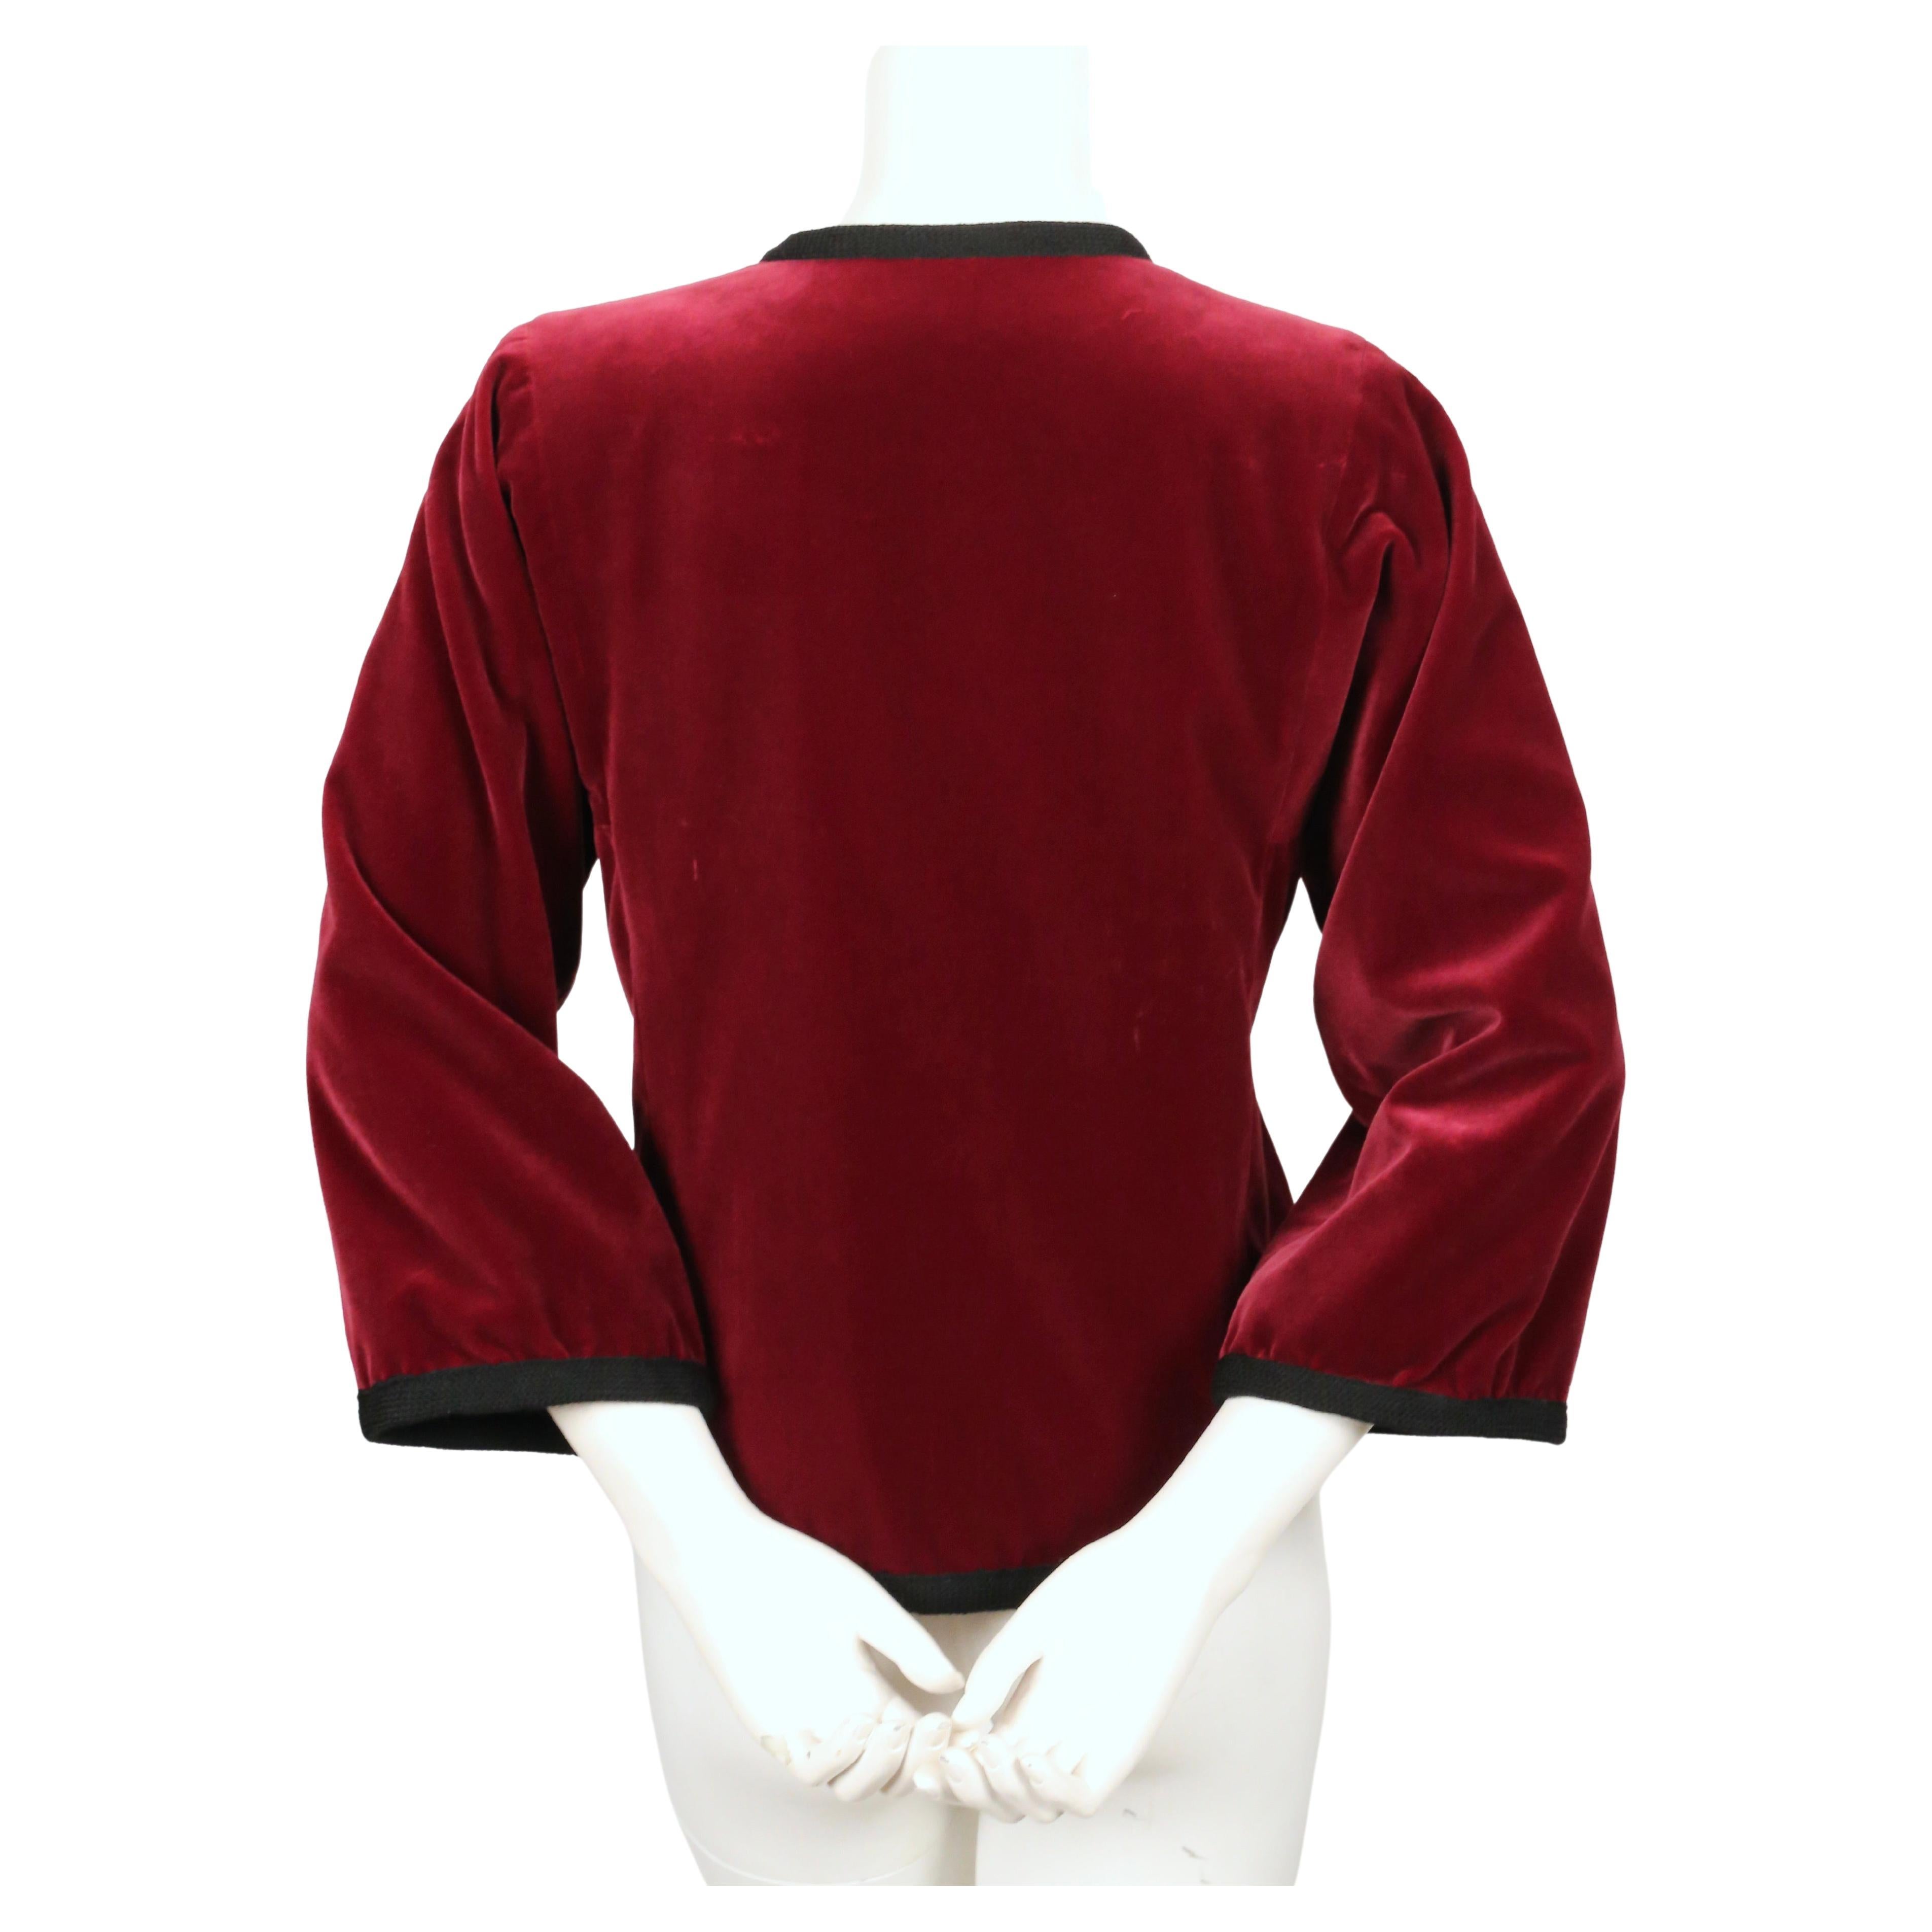 1976 YVES SAINT LAURENT Russian collection burgundy velvet jacket   For Sale 1